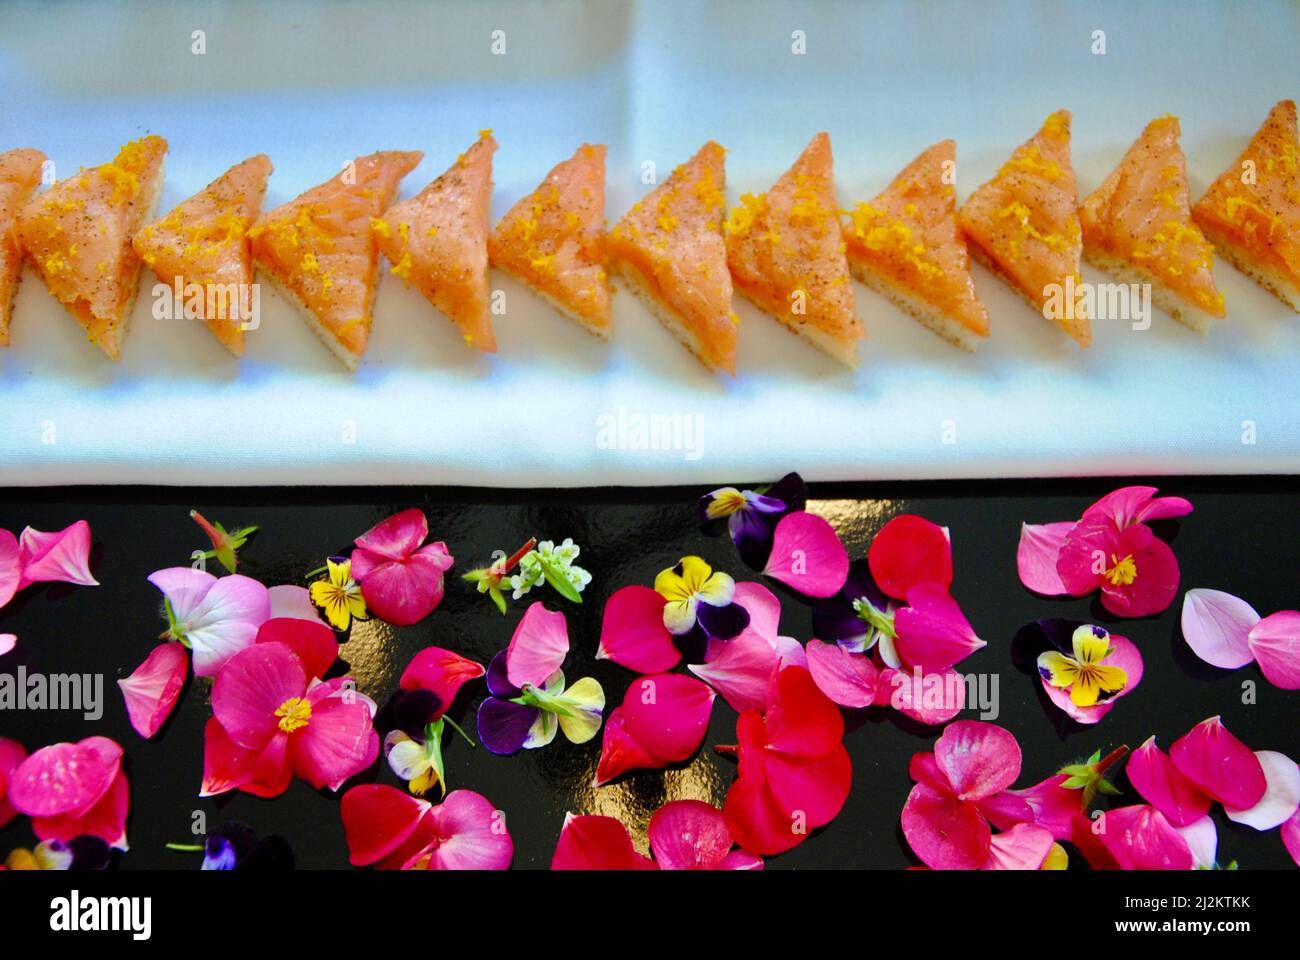 Canapés au saumon fumé sur plateau décoré de fleurs comestibles Banque D'Images